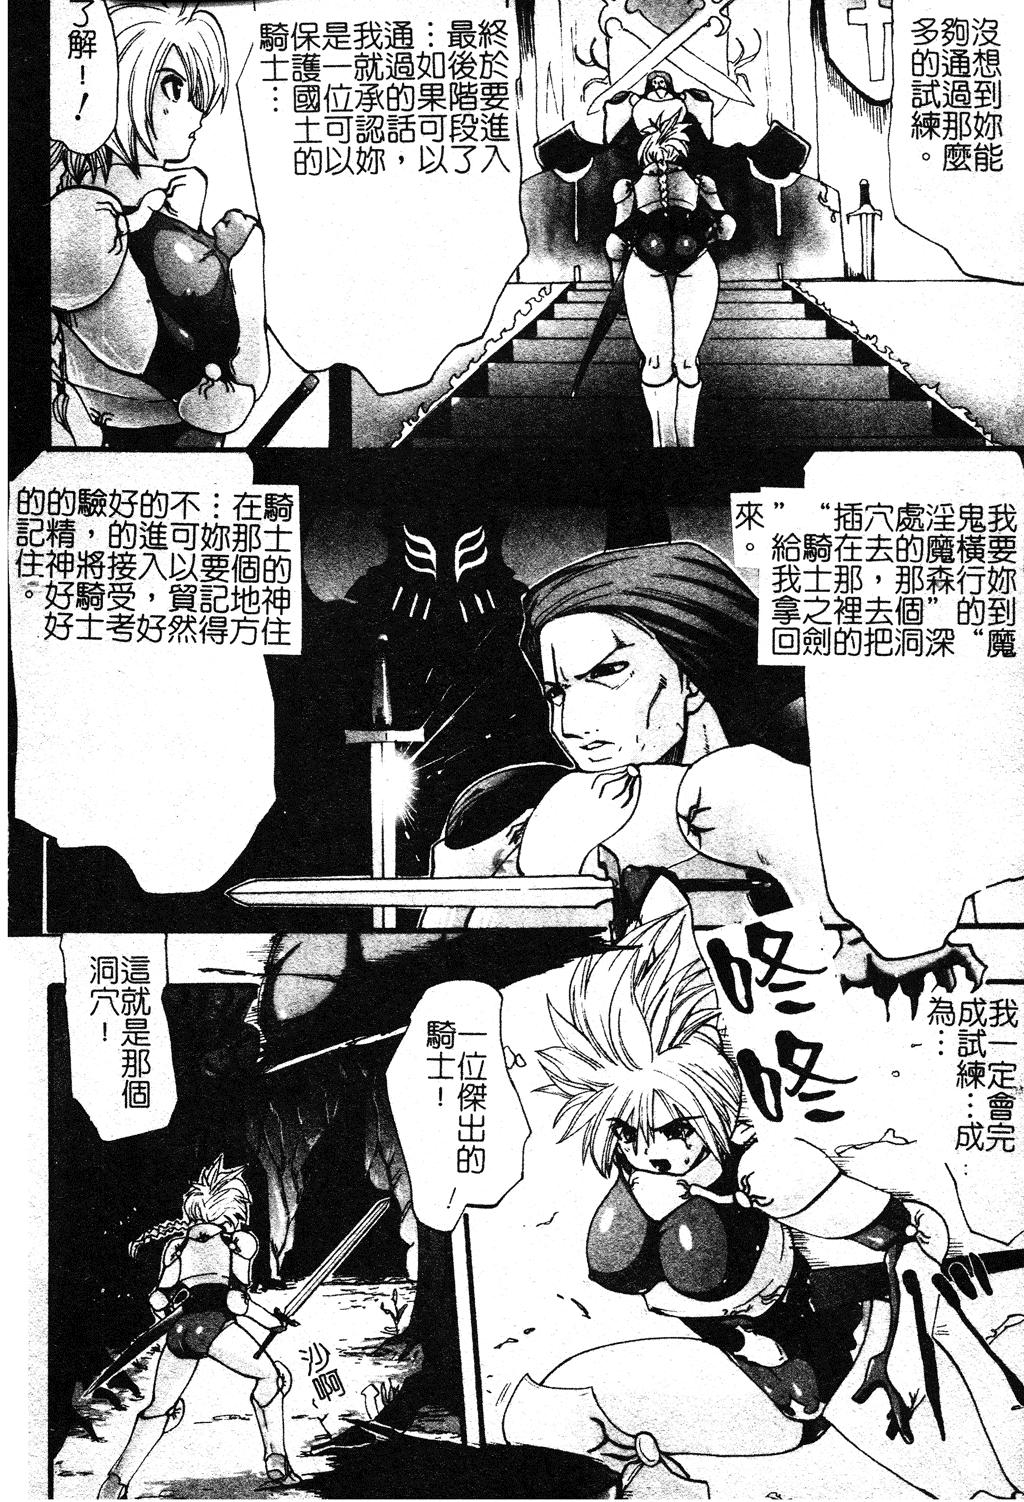 Longhair Shikkoku no Kairaku Morrita - Page 5